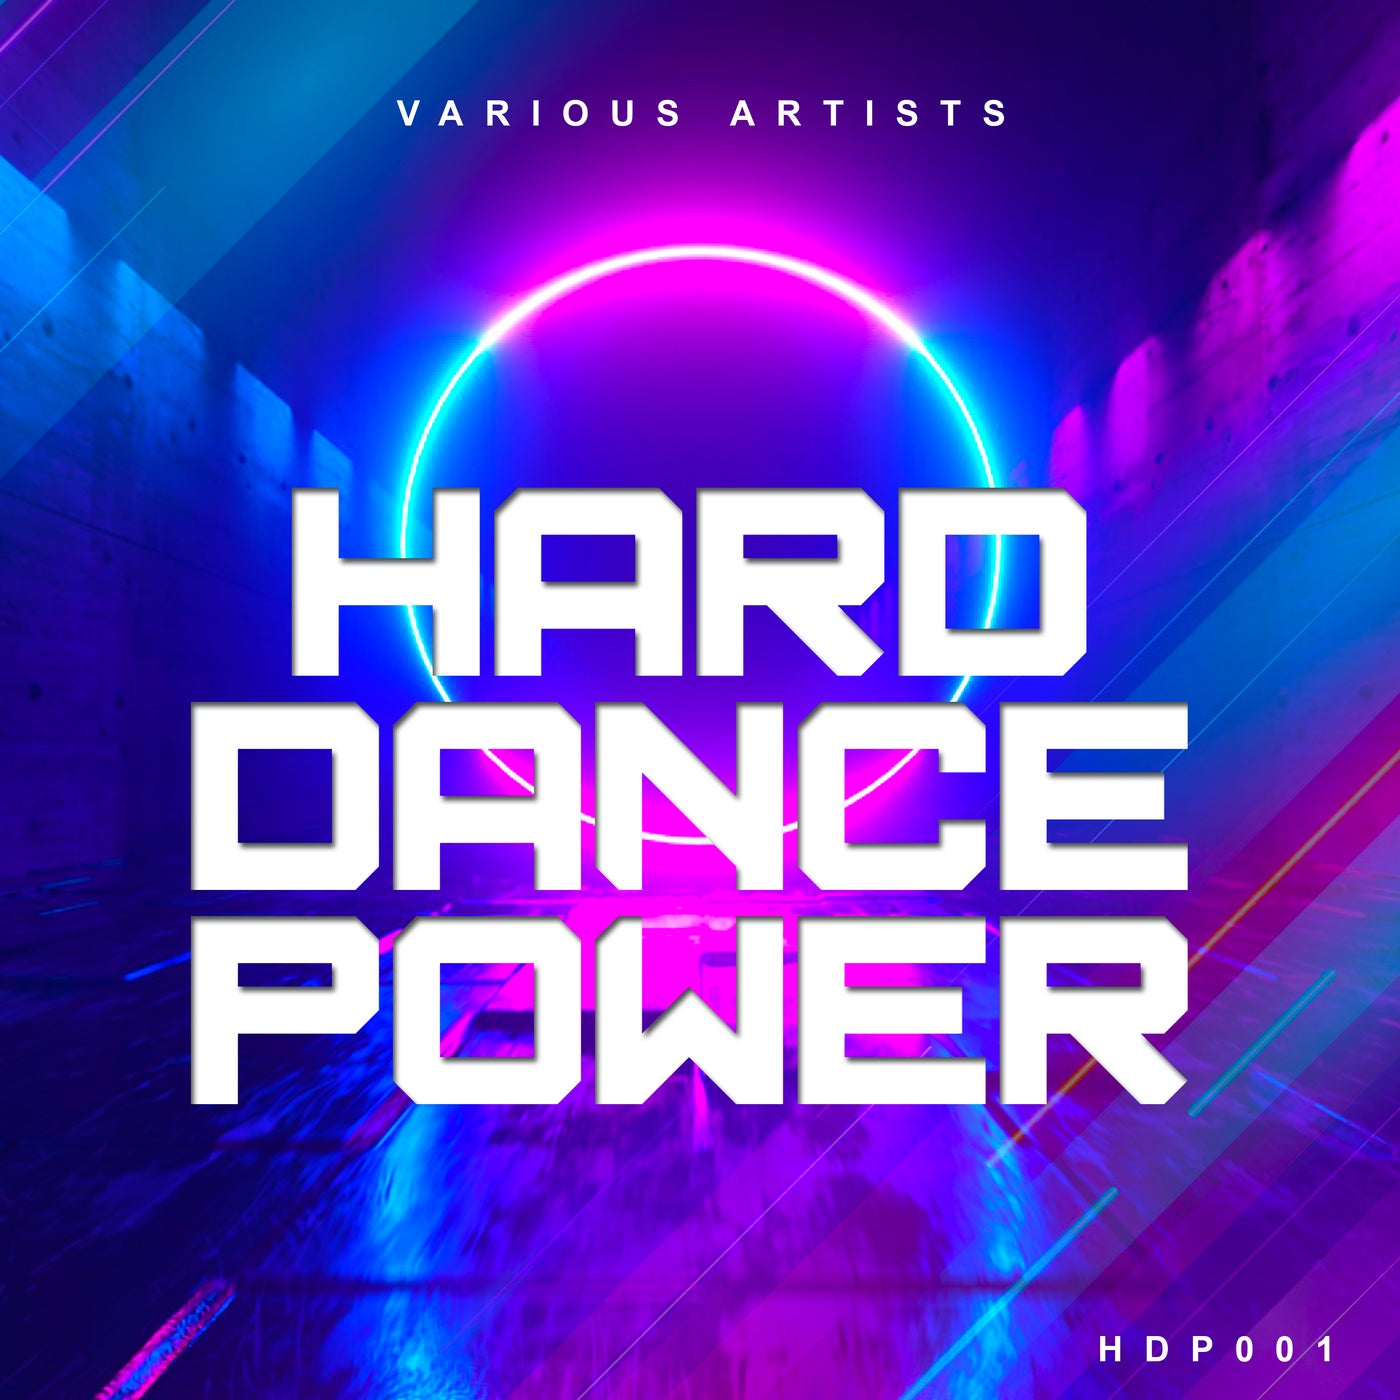 Hard Dance Power 1